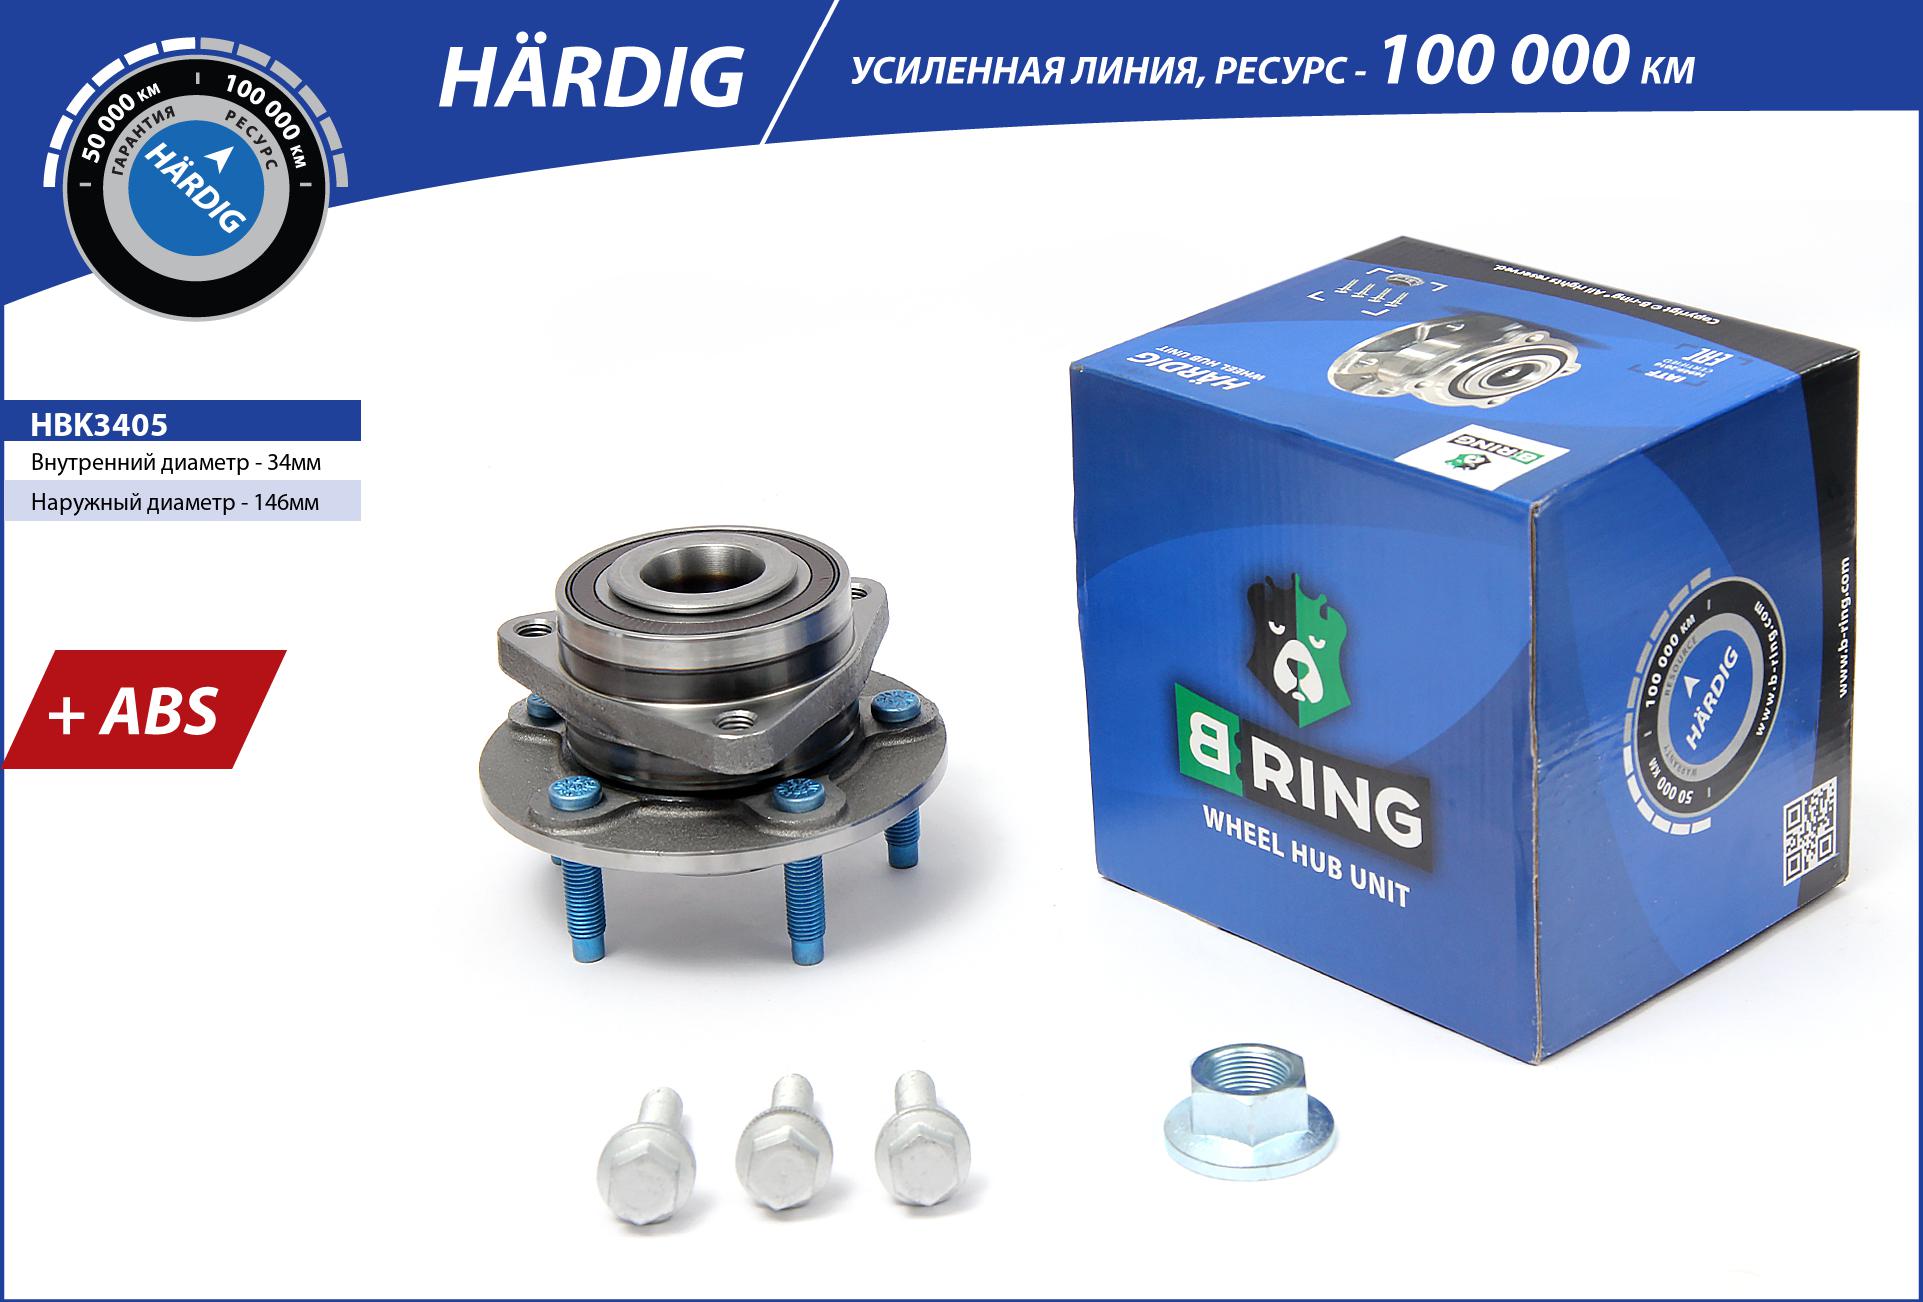 B-RING HBK3405